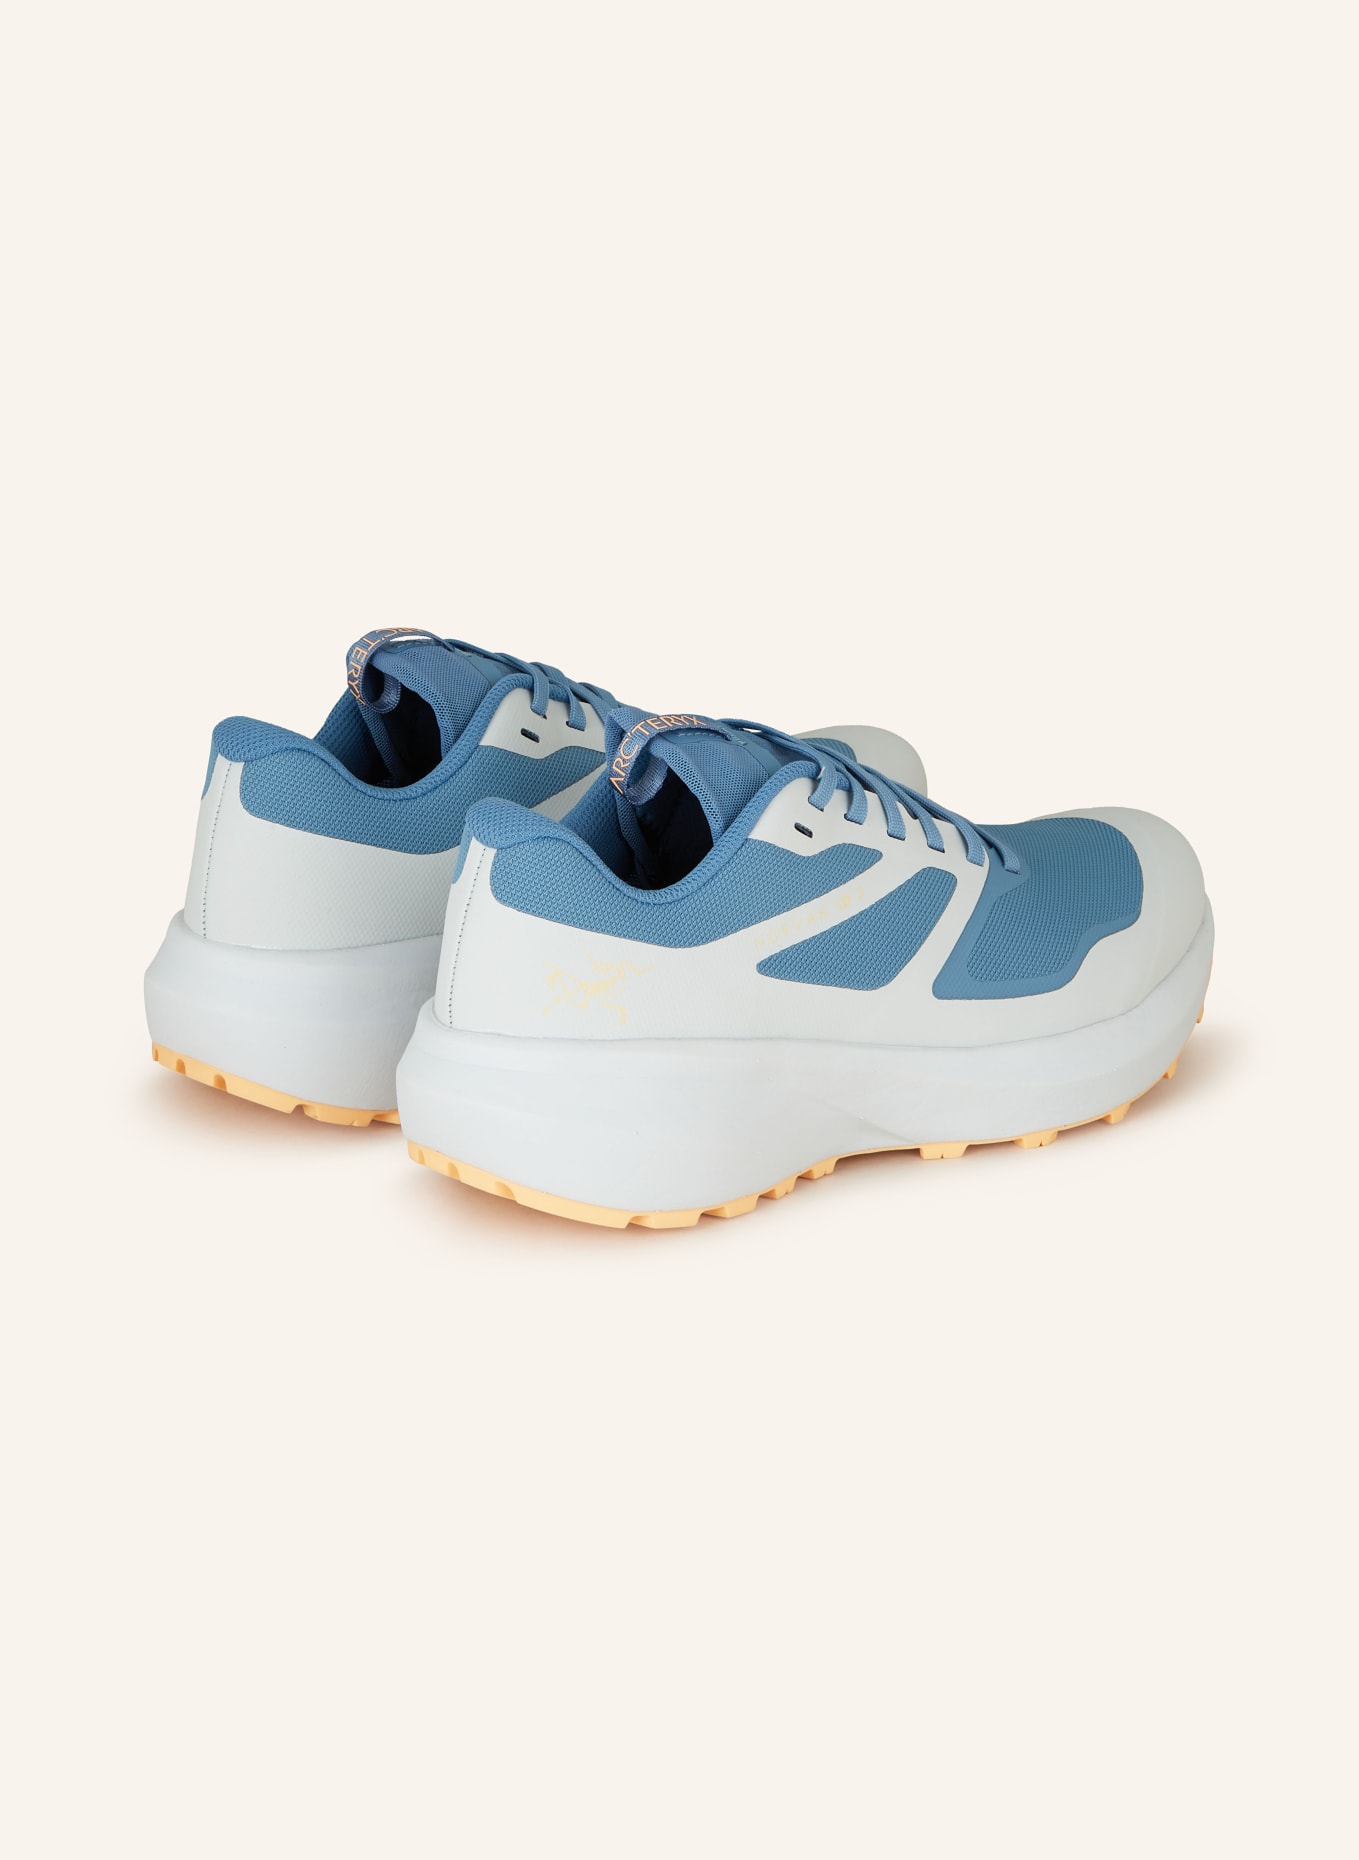 ARC'TERYX Trekking shoes NORVAN LD 3 GTX, Color: BLUE/ LIGHT BLUE (Image 2)